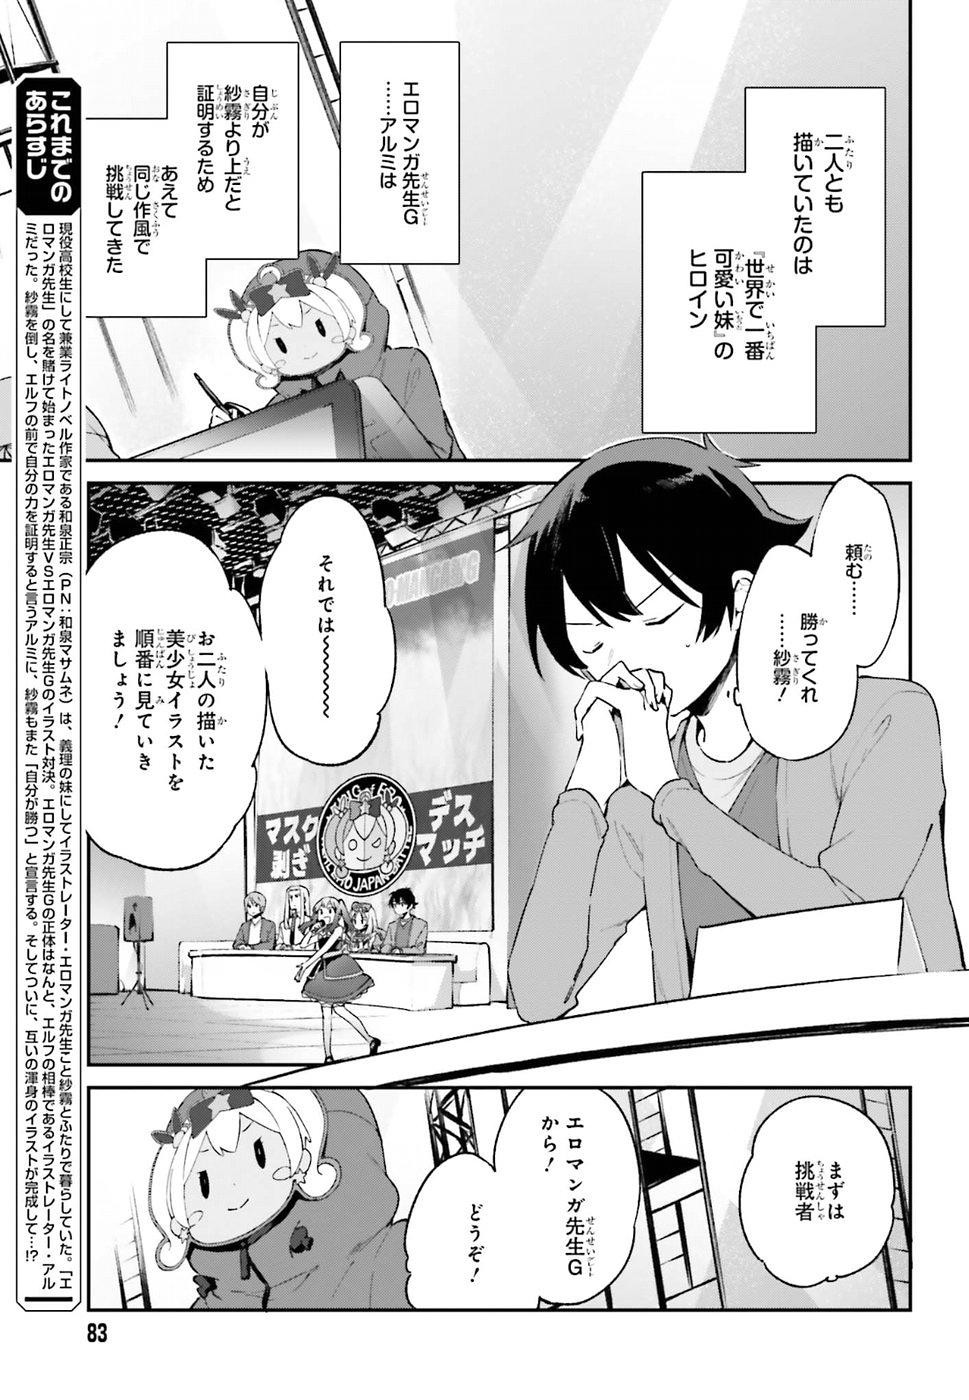 Ero Manga Sensei - Chapter 45 - Page 3